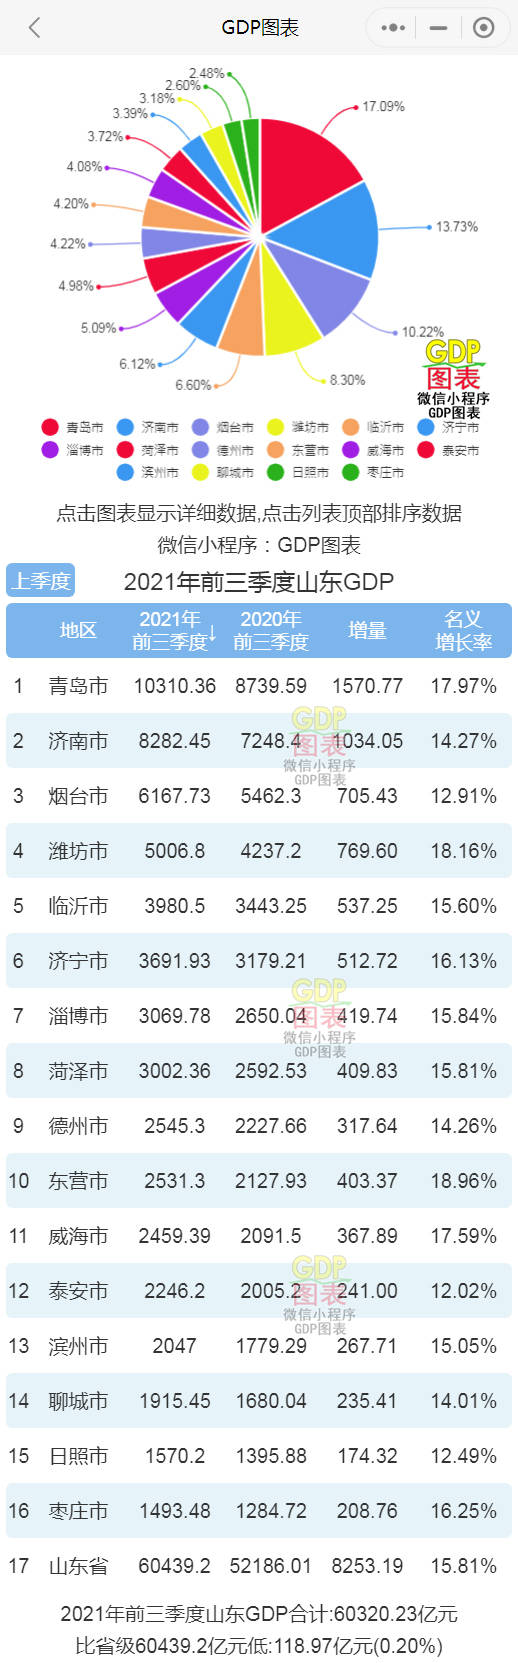 总gdp山东排名_中国GDP排名前十的省份,山东排名第一,超过60亿